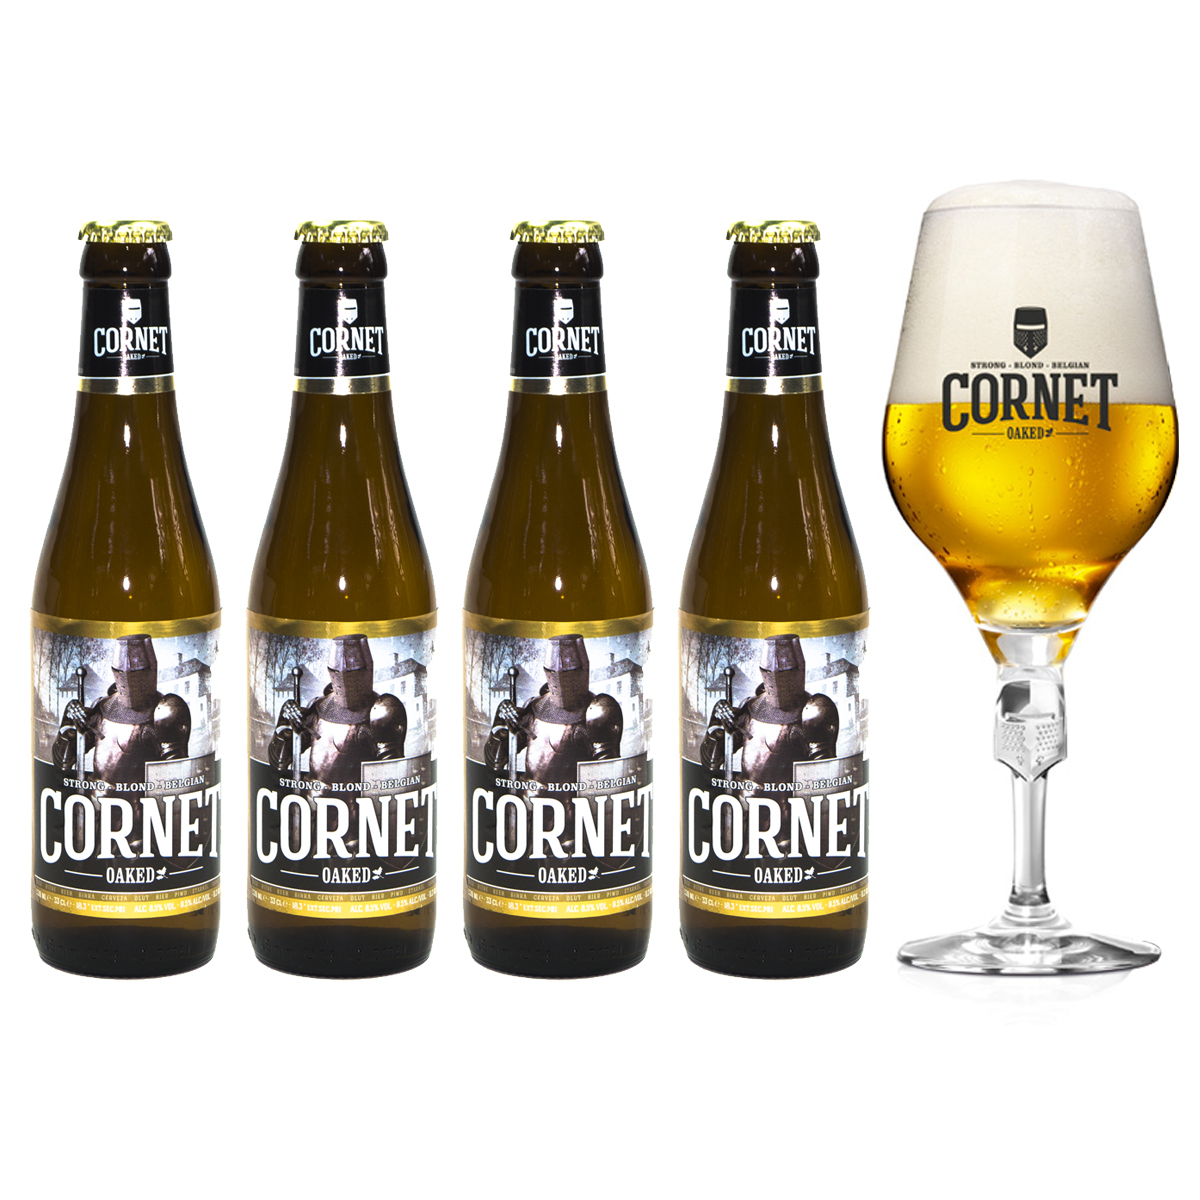 Vier keer Cornet Oaked Gratis Cornet bierglas incl. statiegeld